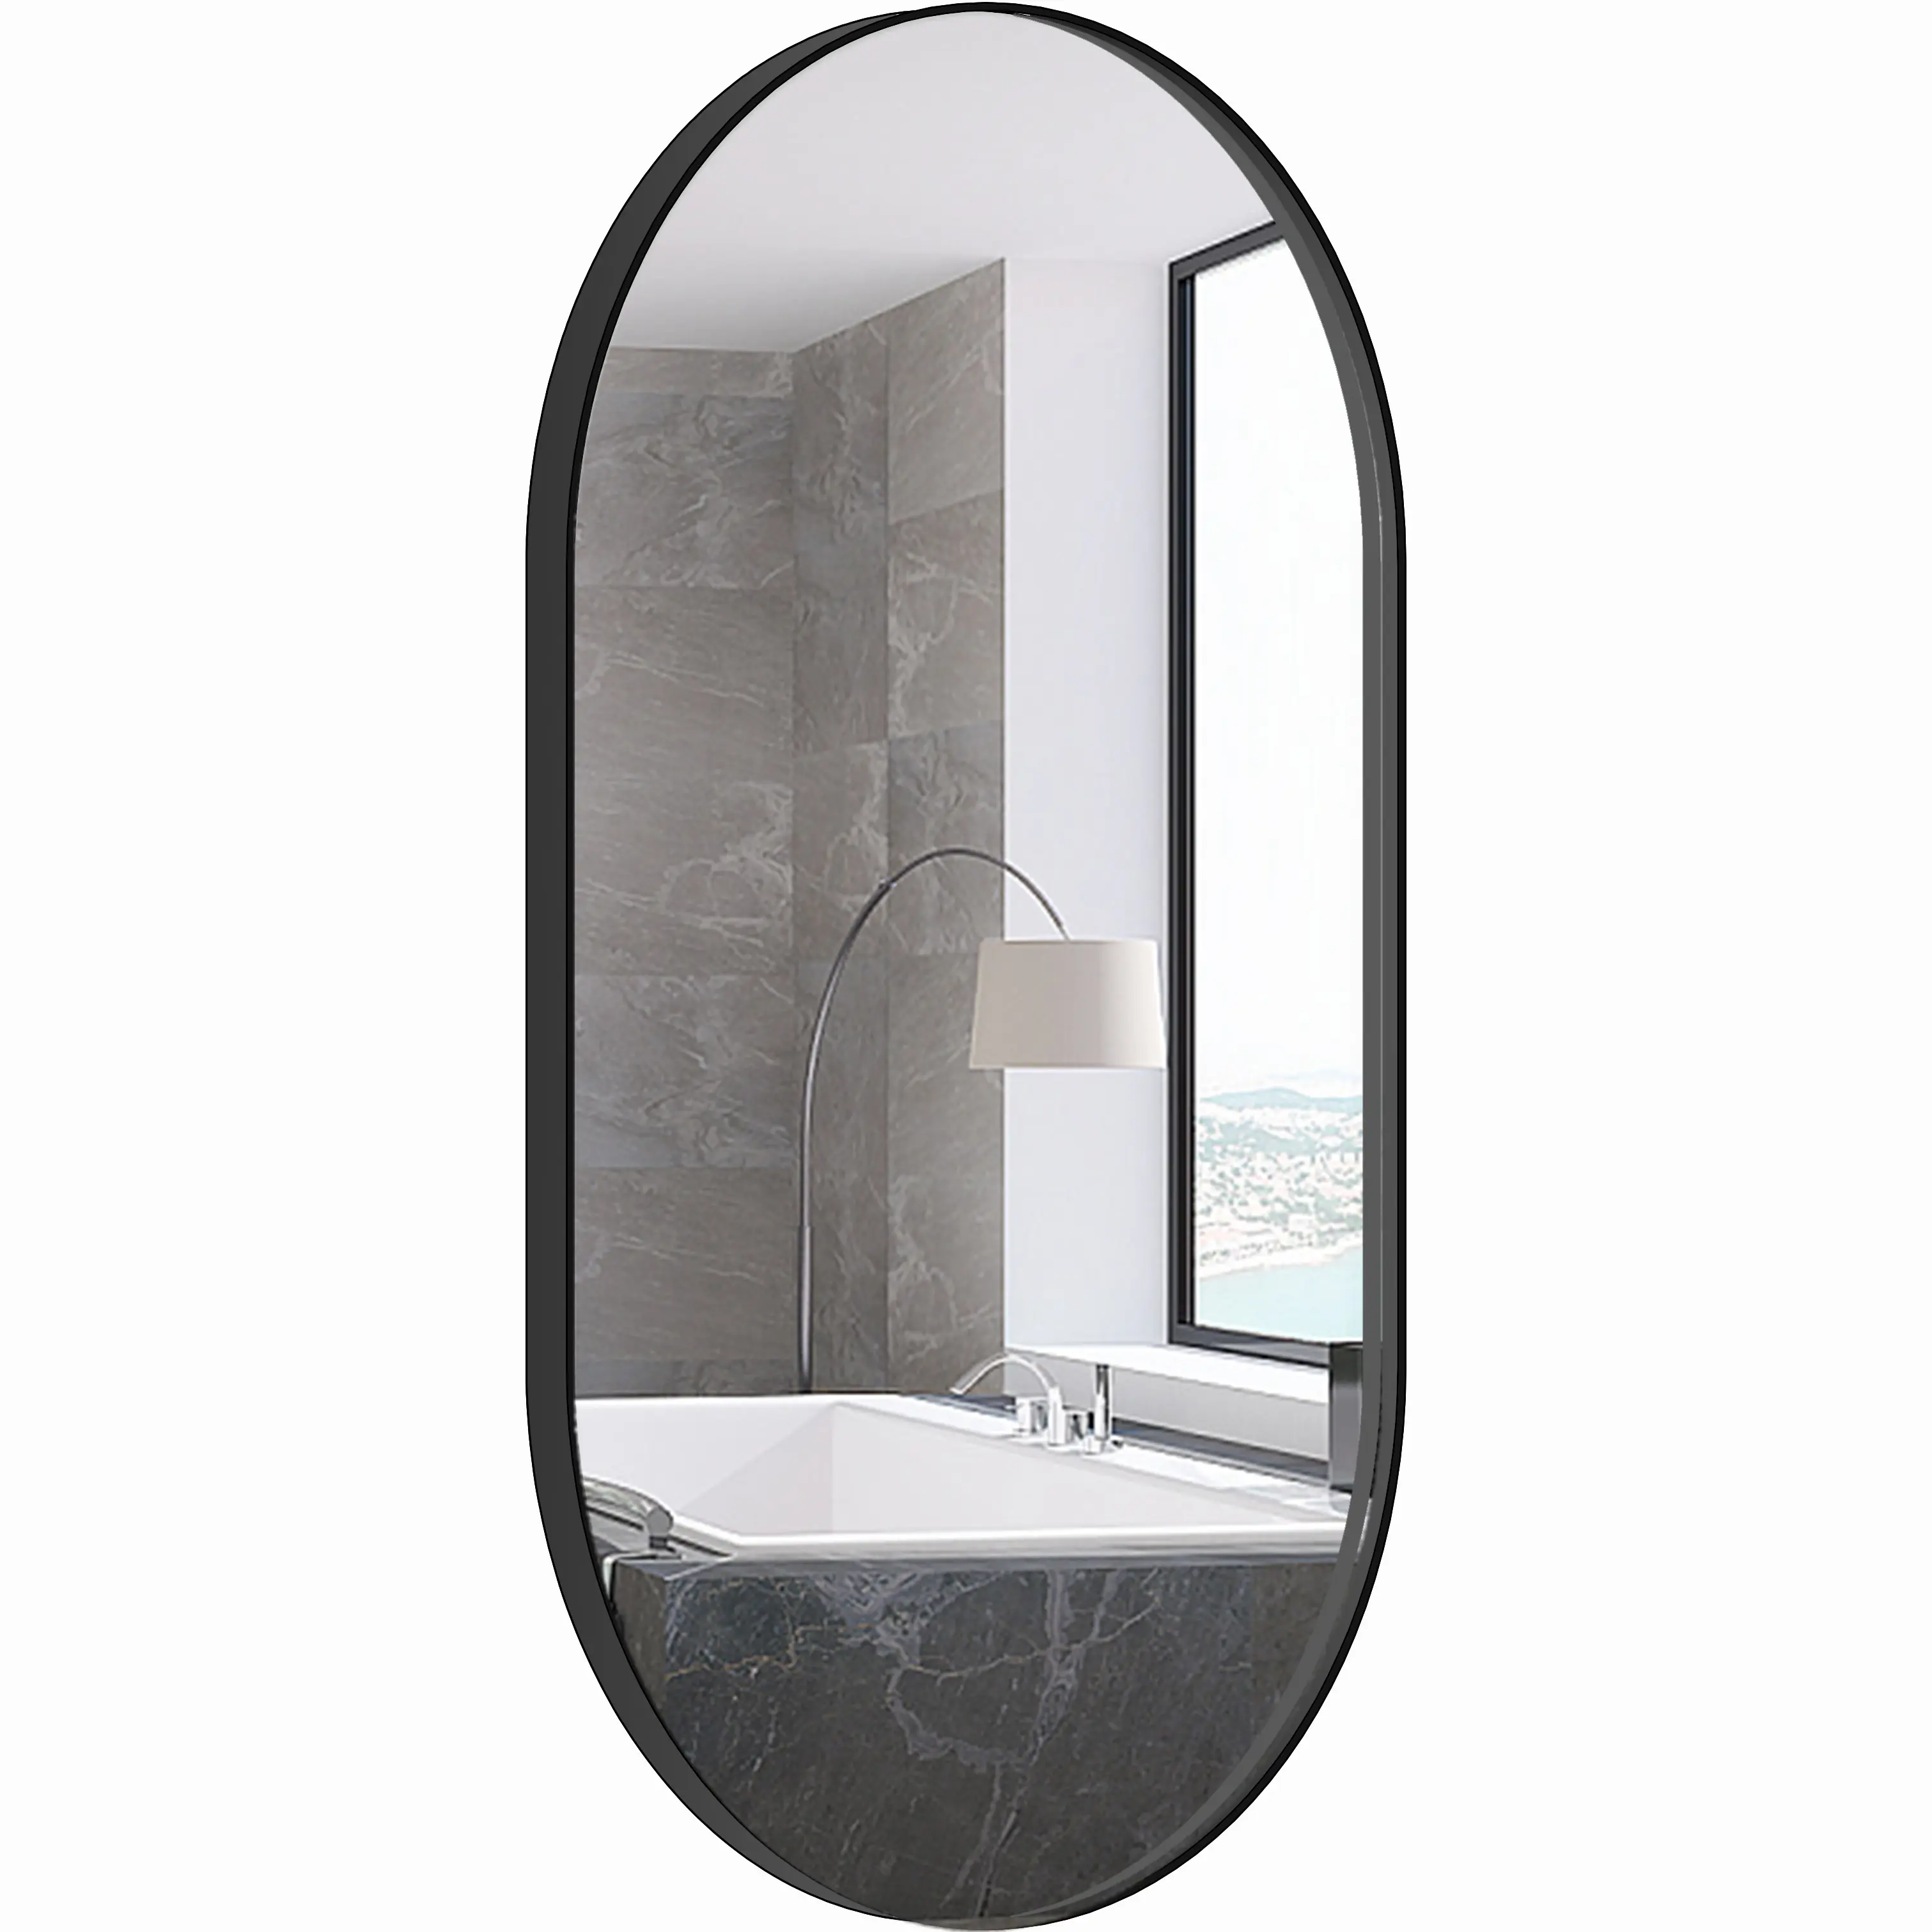 Design a specchio in vetro per lavabo con cornice nera antideflagrante a forma di pillola